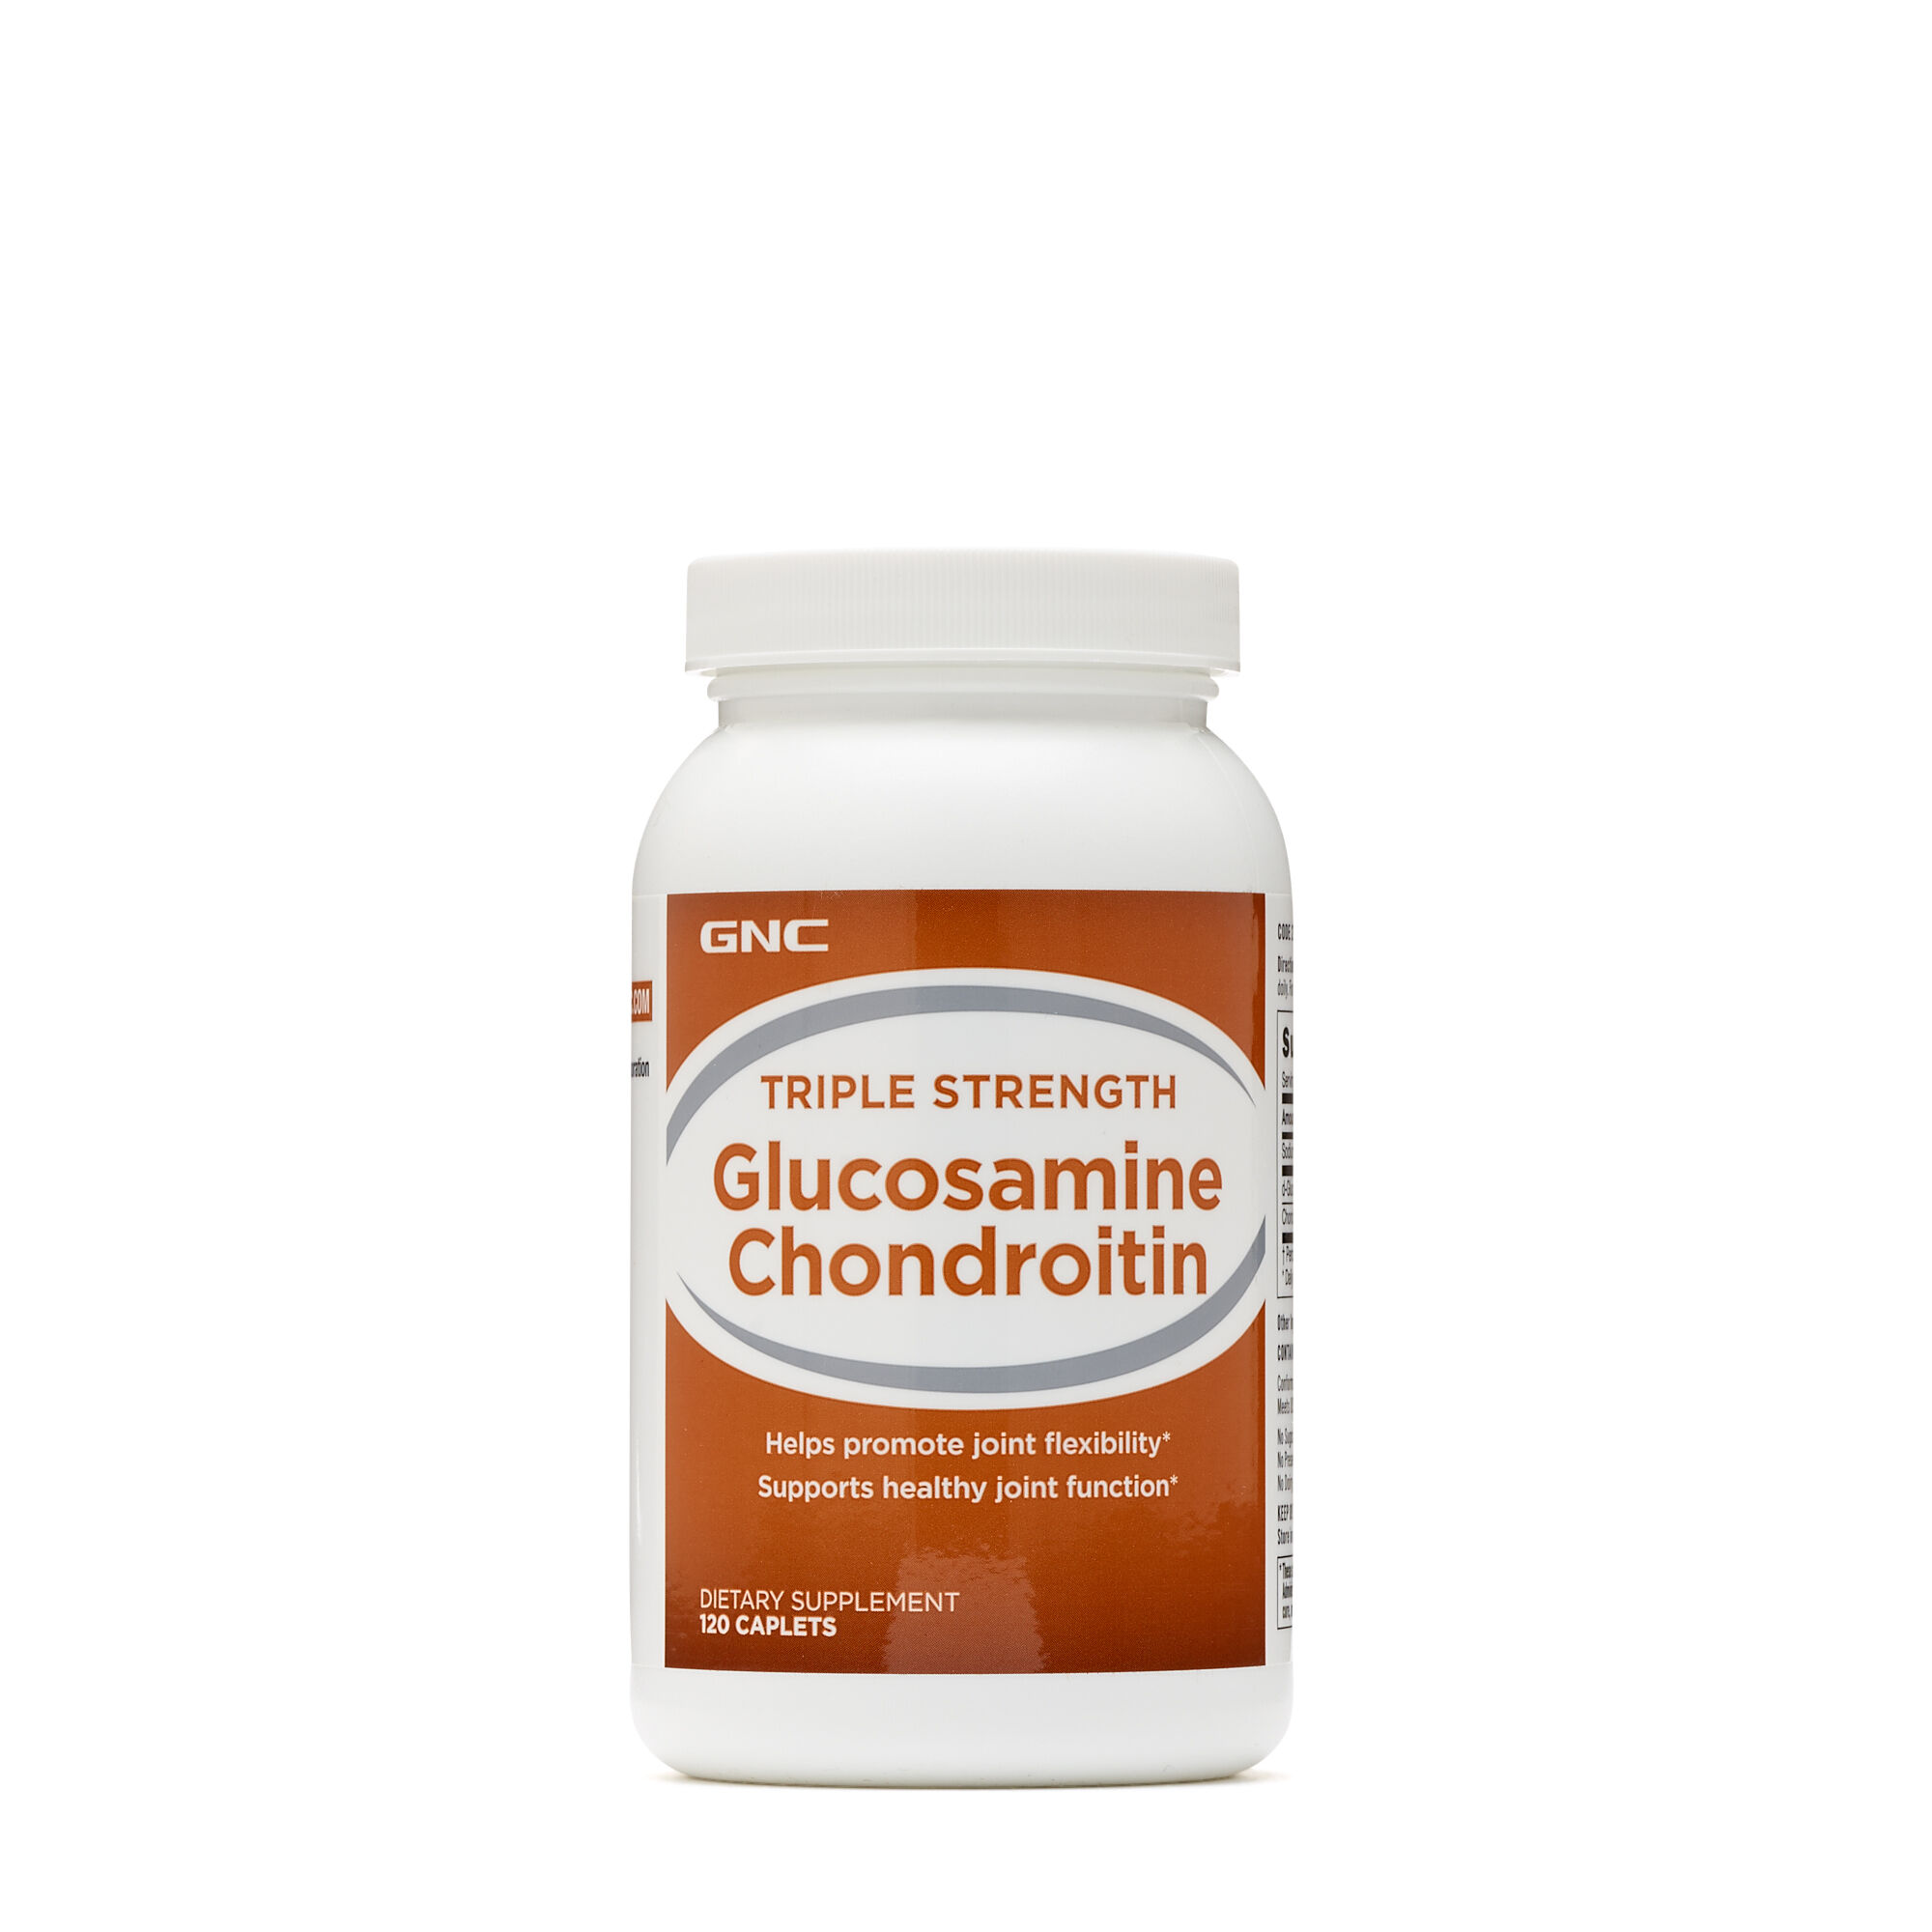 Don chondroitin glucosamine - Mire képesek a porcvédő patikaszerek? - EgészségKalauz